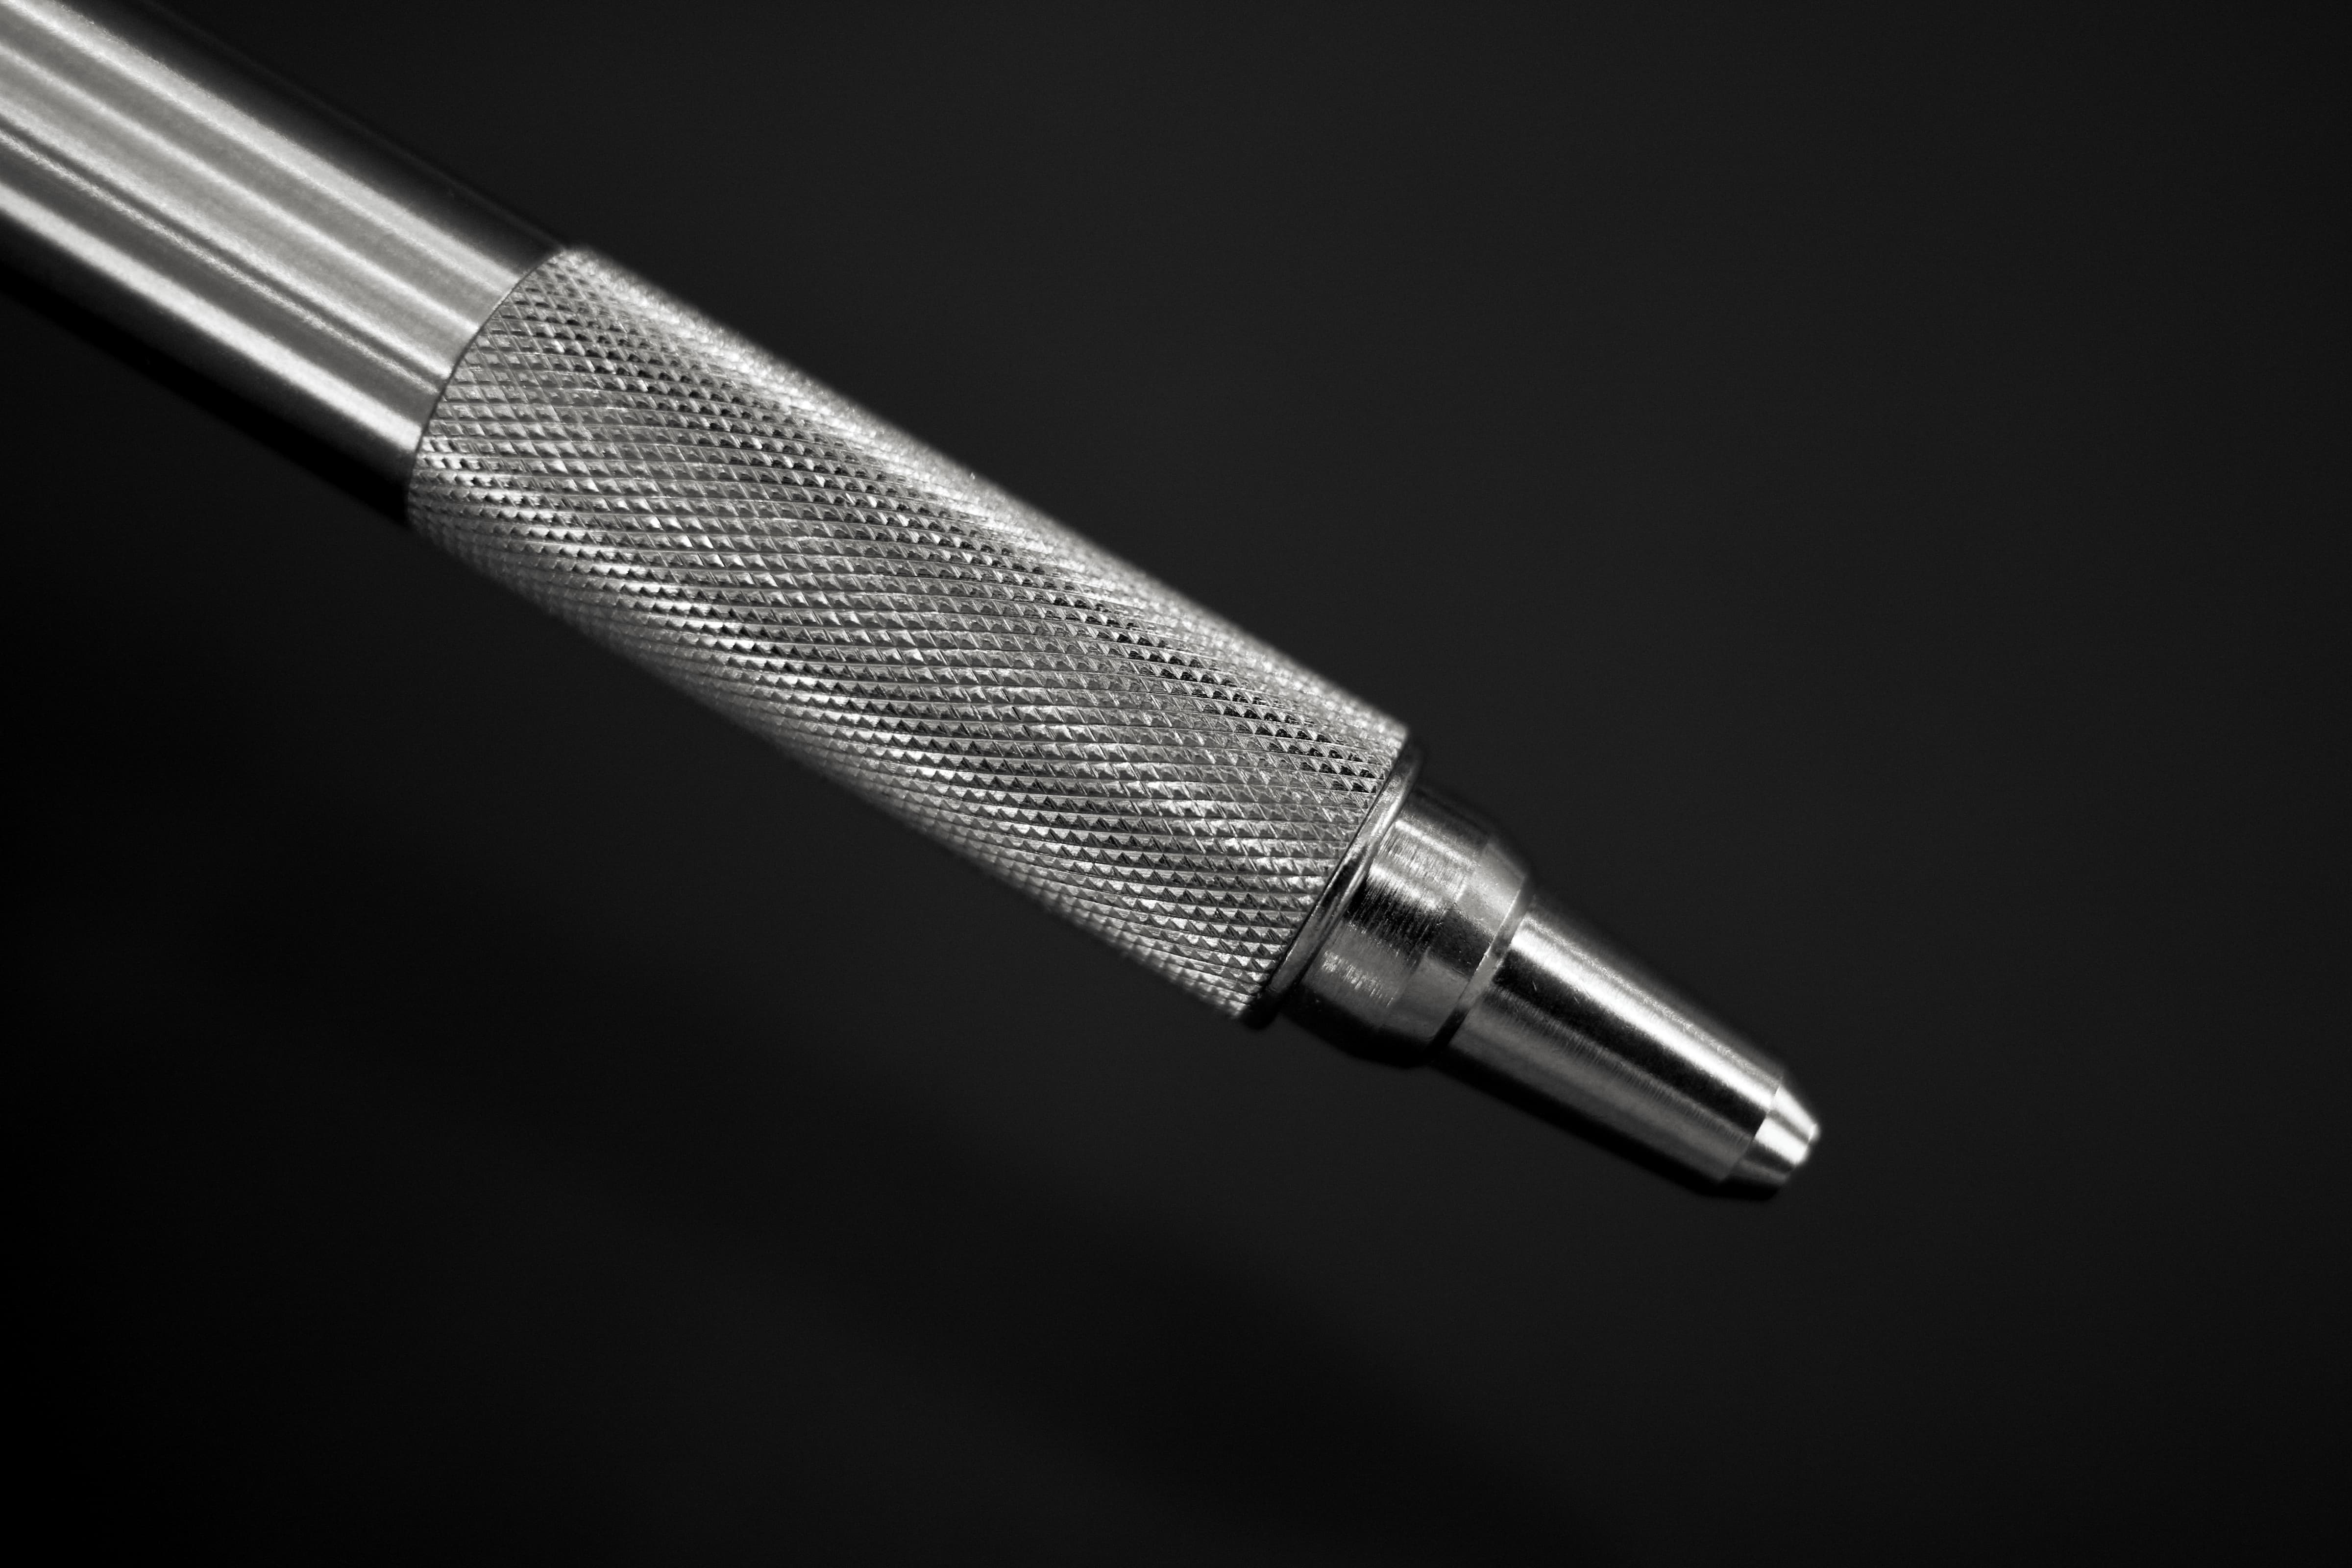 Trên tay bút bi F-701: Một trong những cây bút EDC (everyday carry) nổi tiếng của thương hiệu Zebra